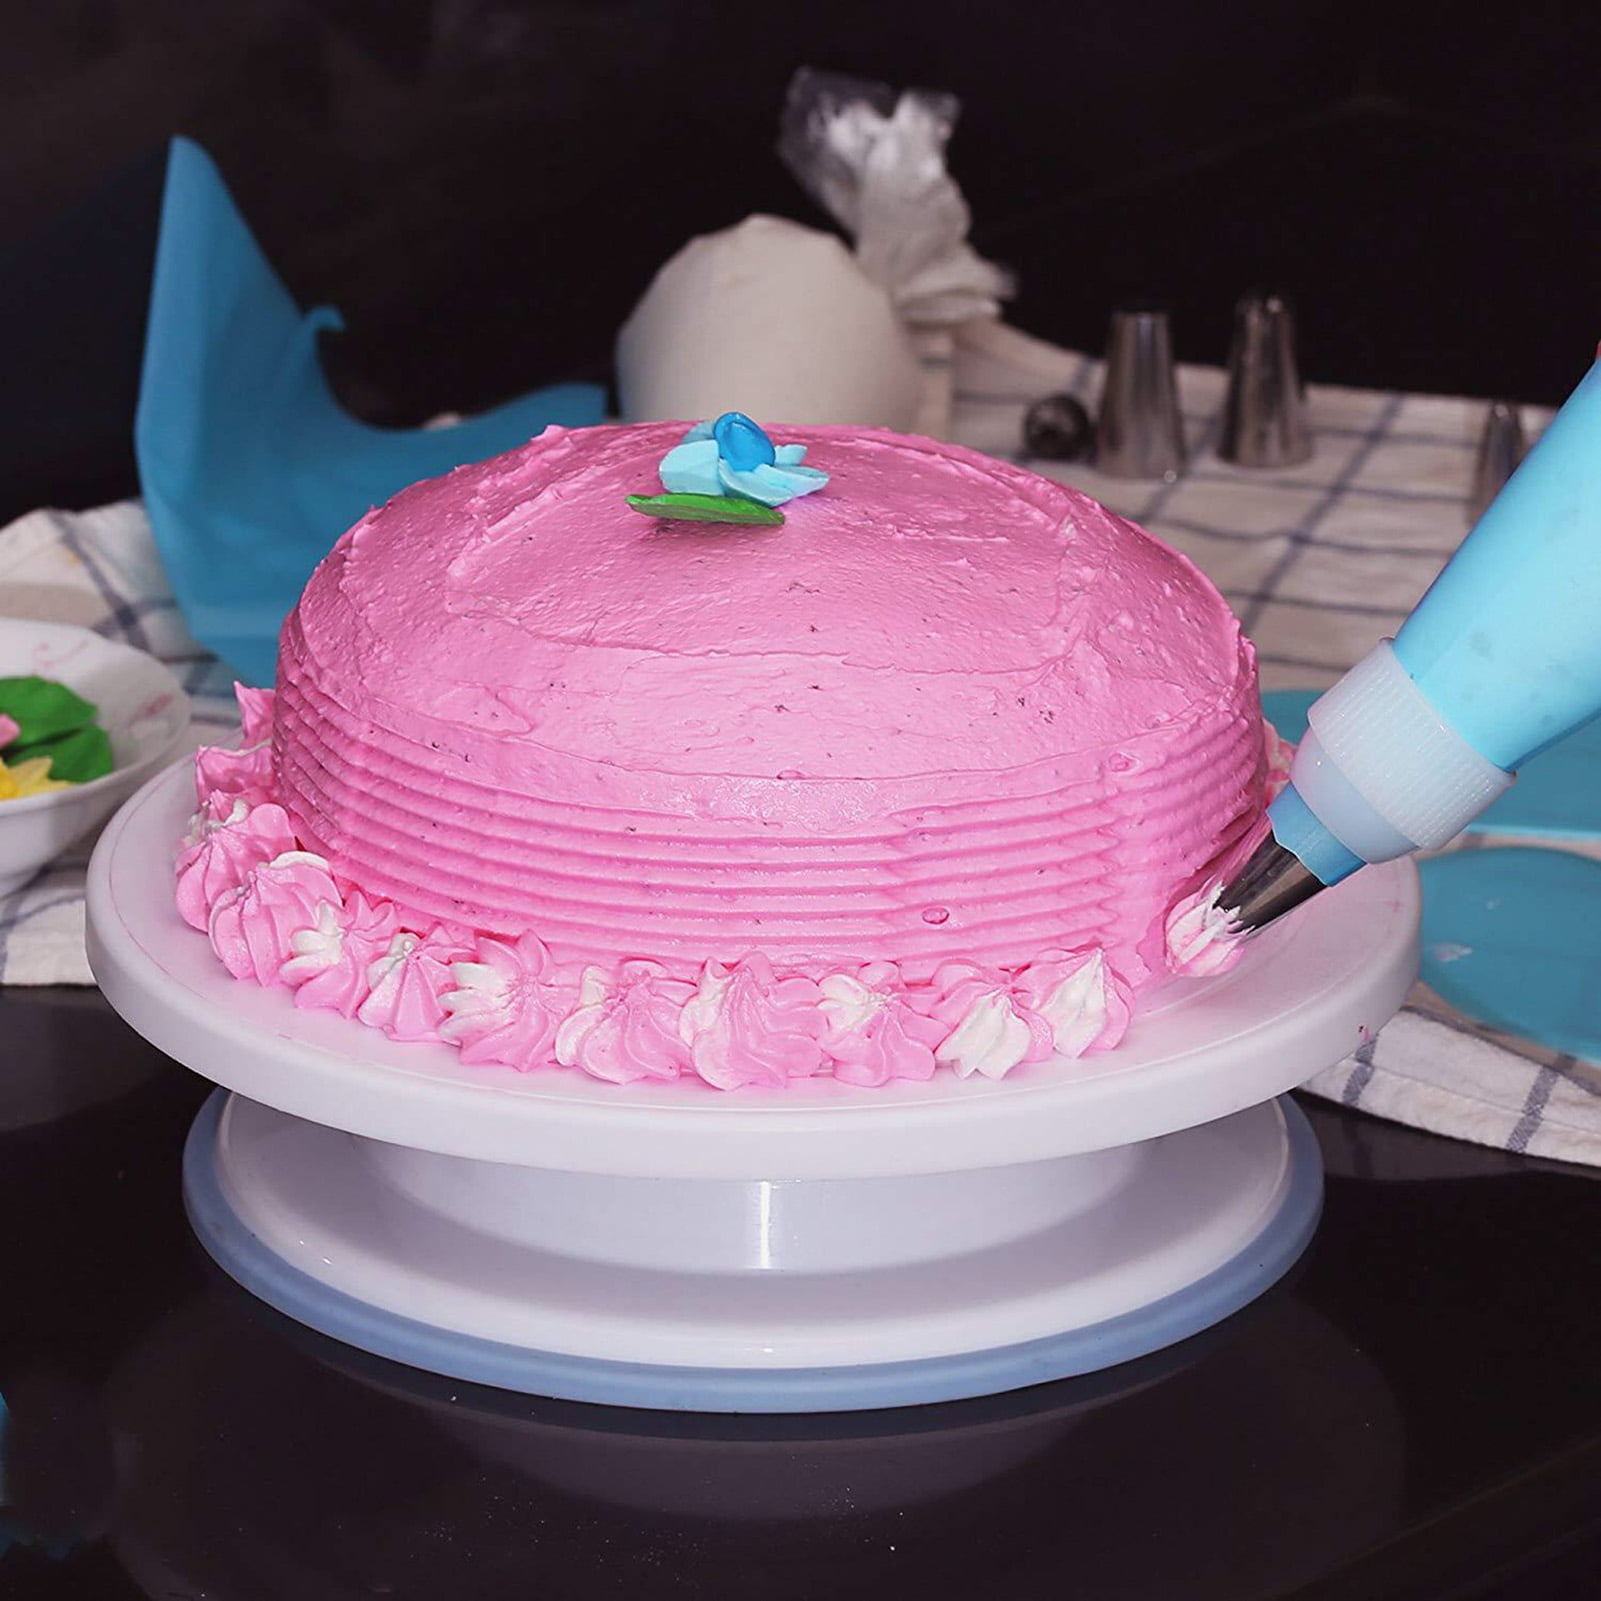 82 Pcs Baking Supplies Kit DIY Cake Cupcake Decorating Icing tips Set Tools US